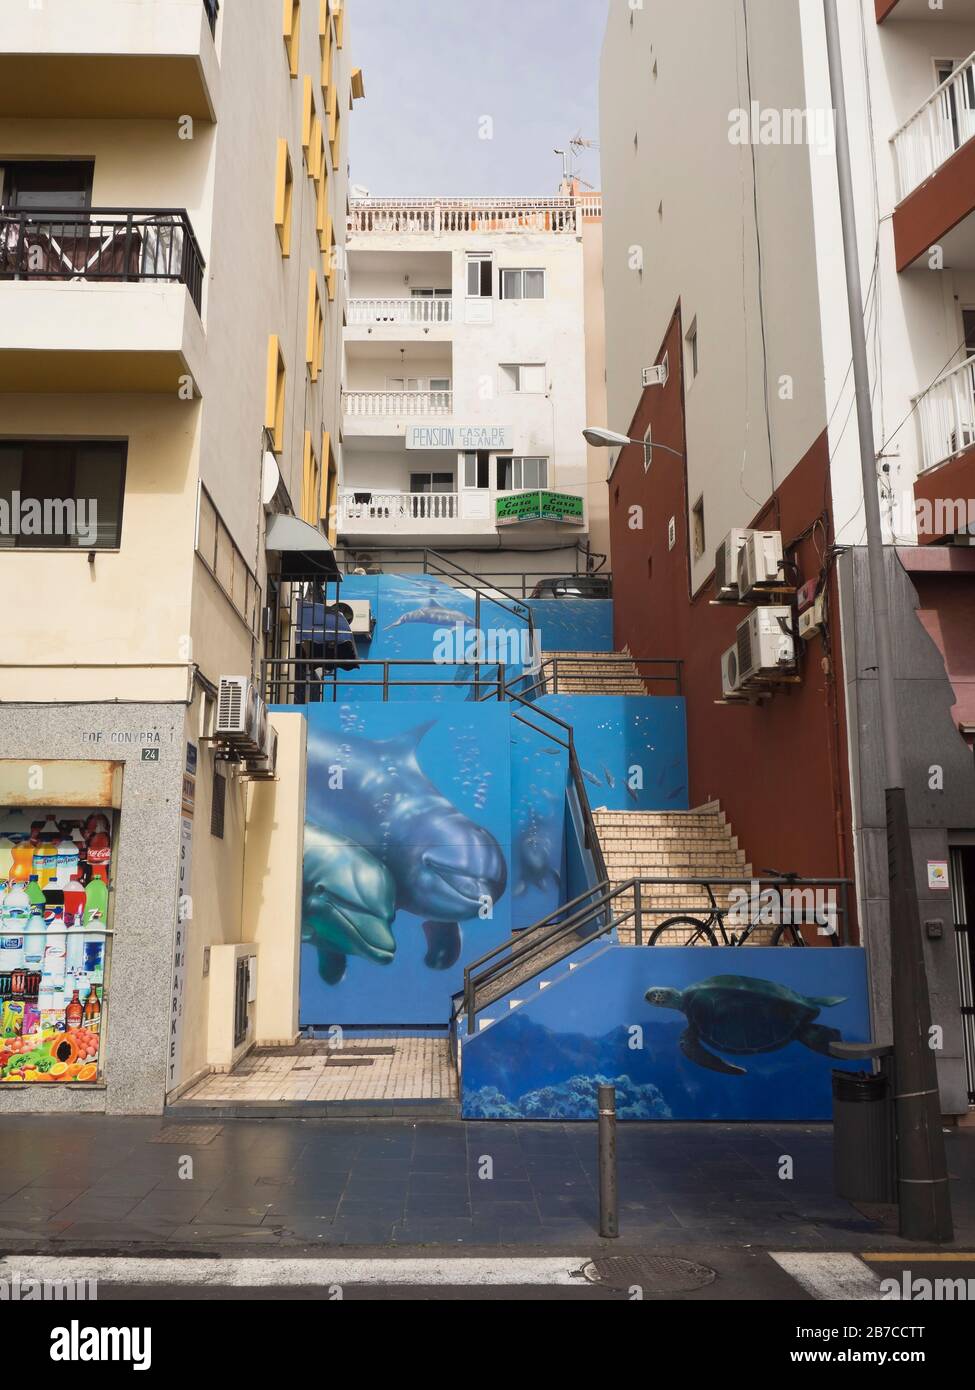 Escalera temática marina en un callejón en el centro de los cristianos en la isla de Tenerife España, delfines y mural de tortugas Foto de stock